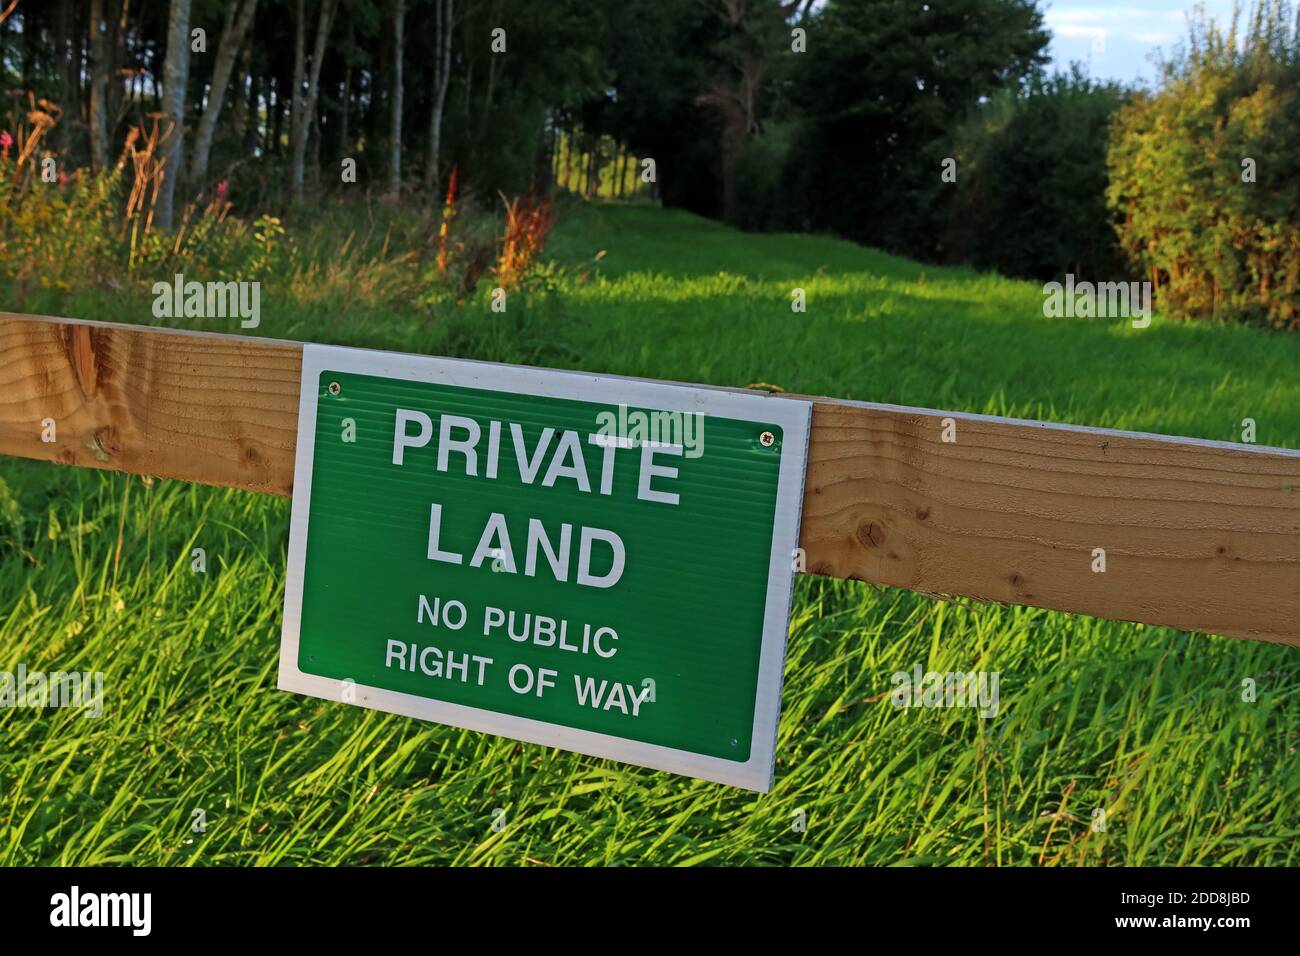 Panneau vert de terre privée, pas d'droit de passage public - s'il vous plaît tenir à l'extérieur - clôture et avis, indiquant une limite Banque D'Images